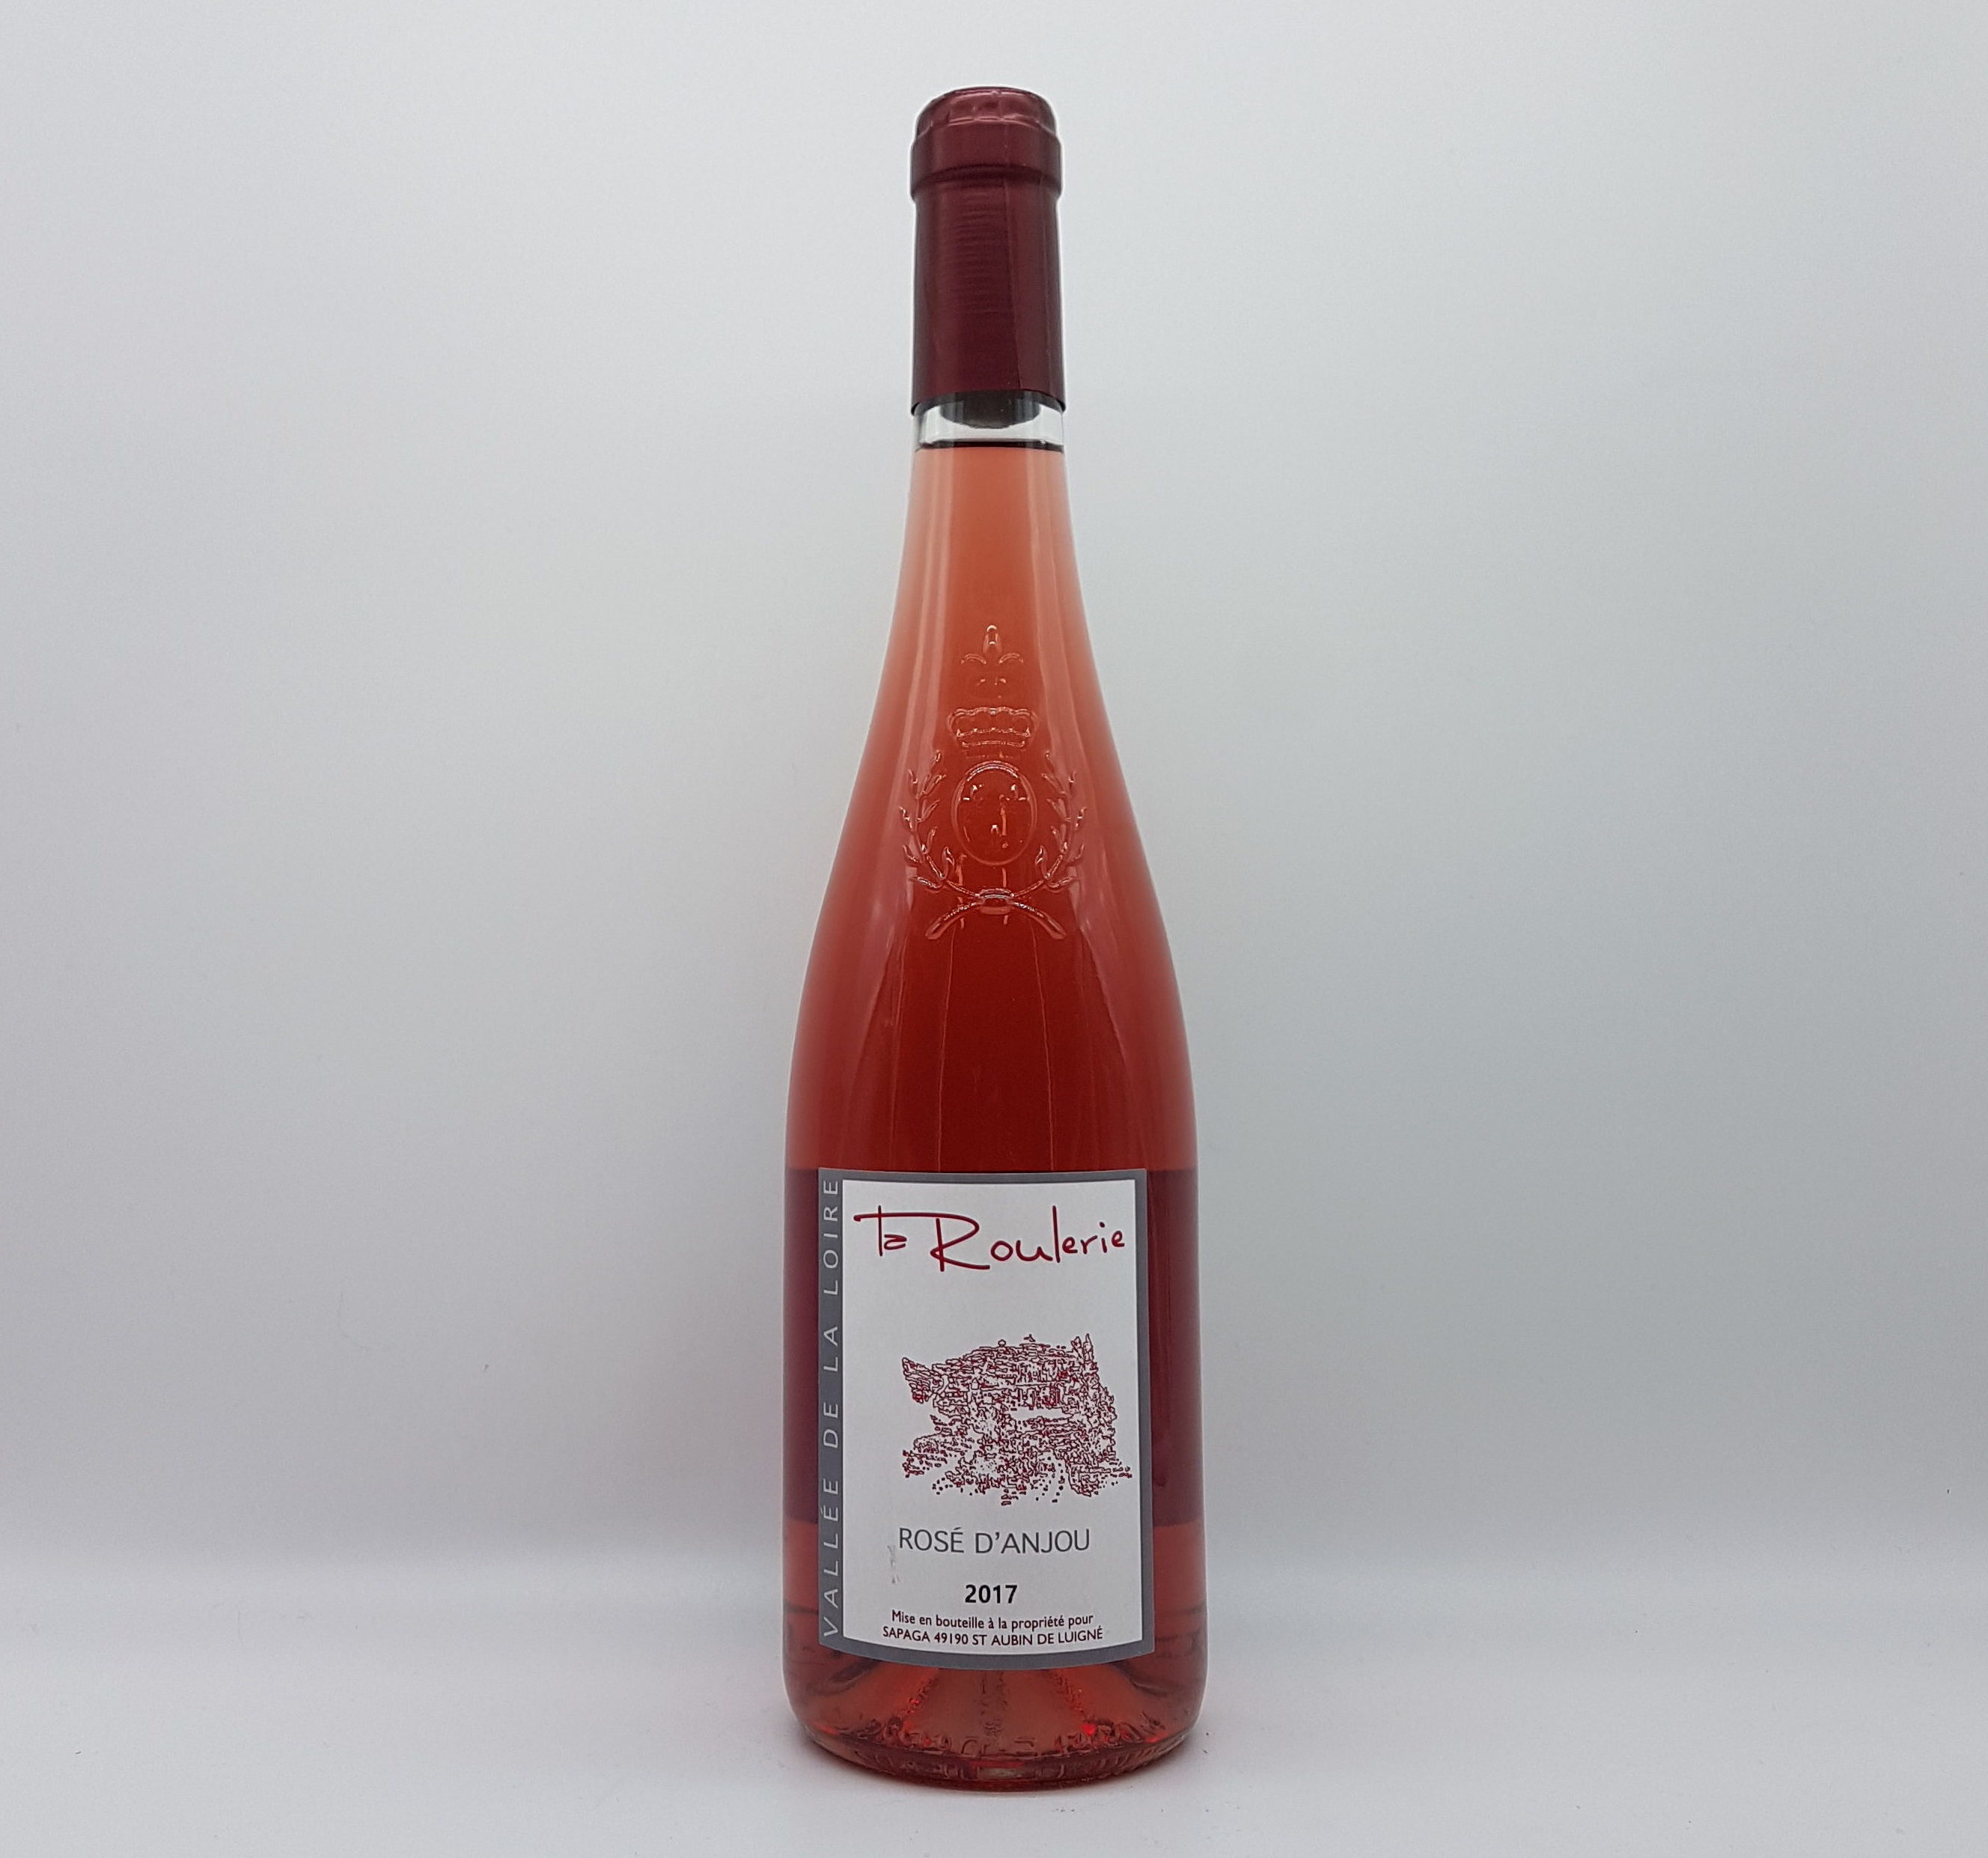 2021 Rose d' Anjou, Chateau de la Roulerie - Quality wines from Pe...